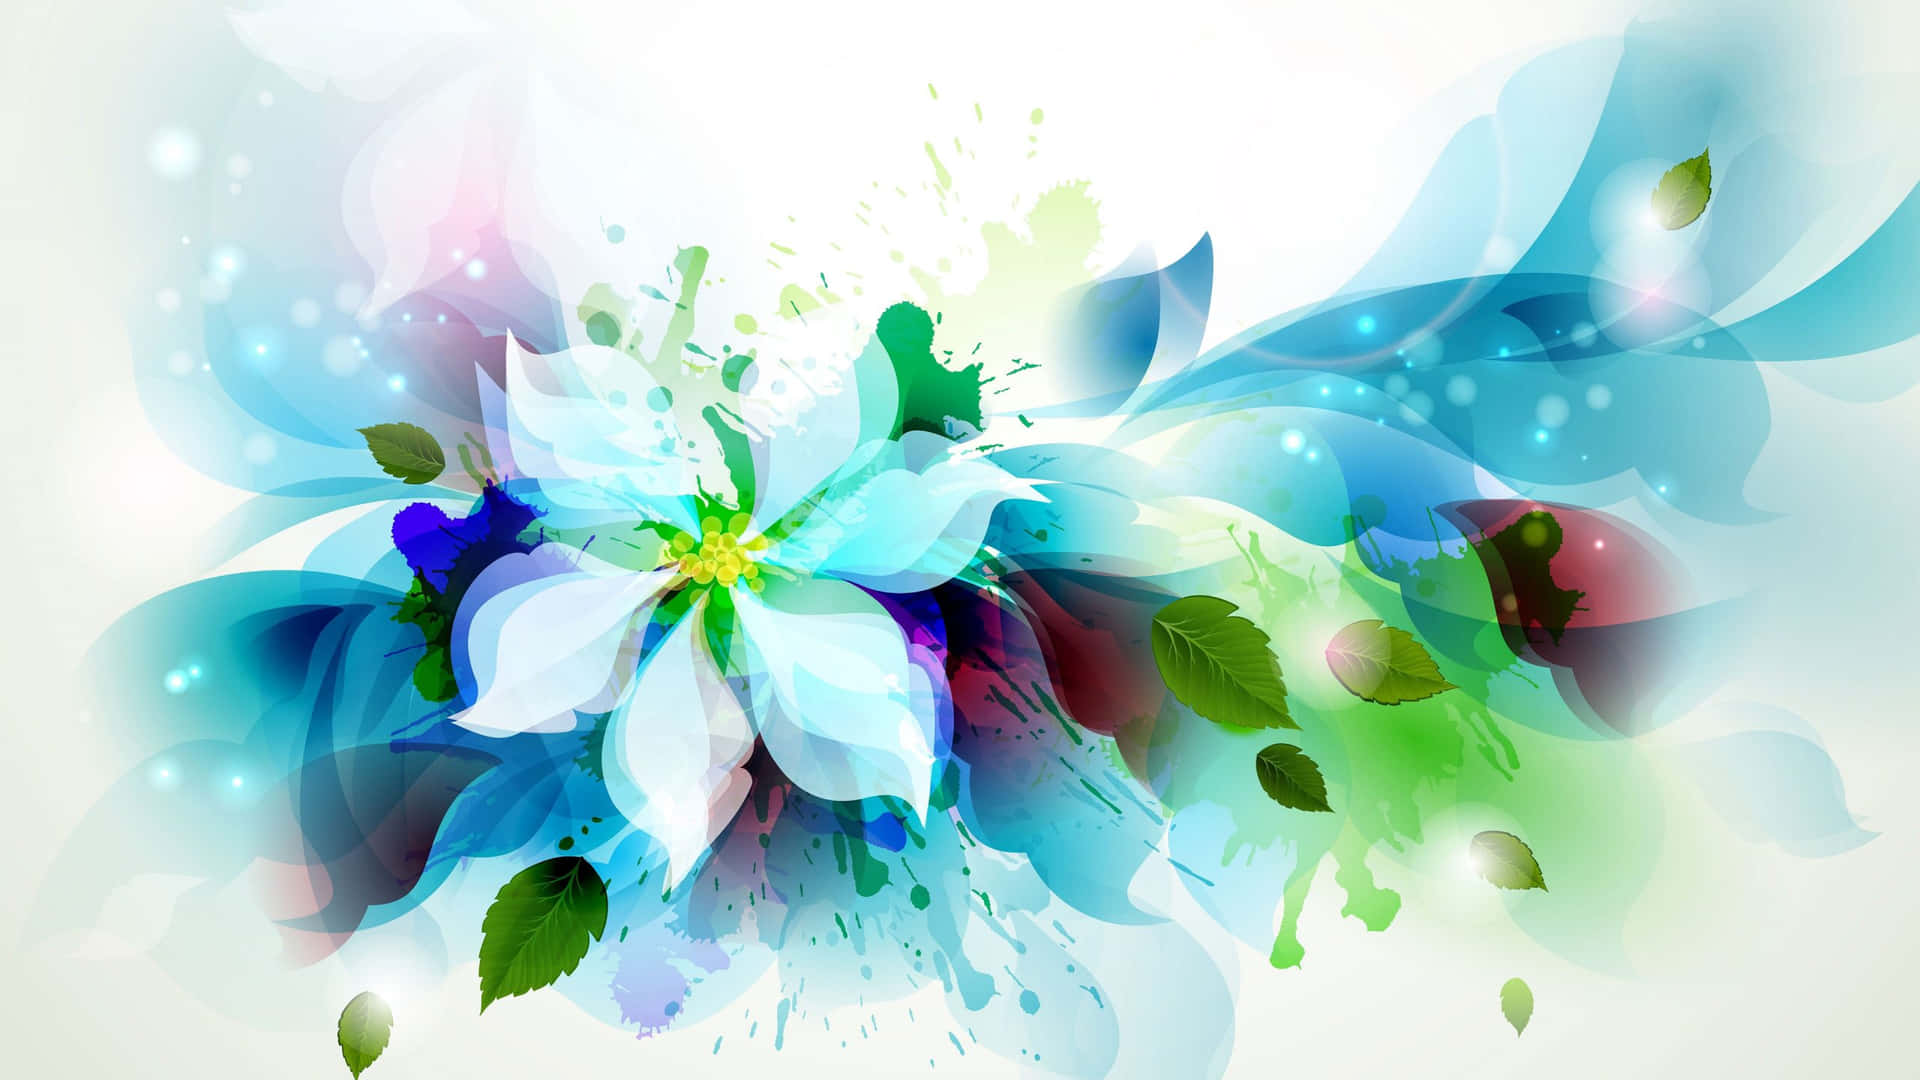 En Delikat Buket af Slående Vandfarve Blomster Wallpaper